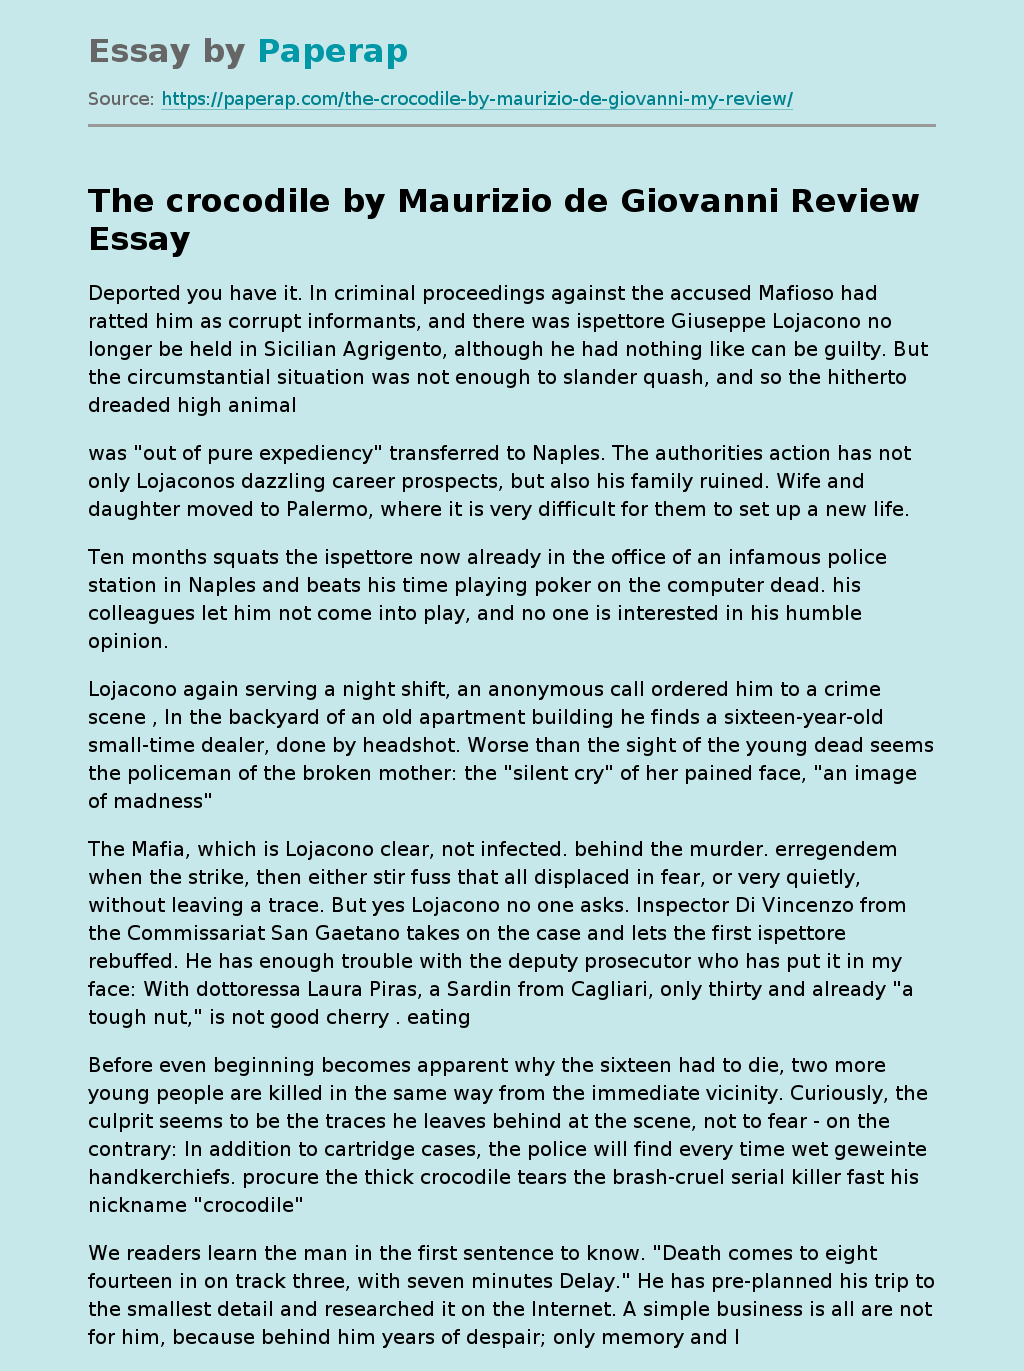 The Crocodile by Maurizio de Giovanni Review